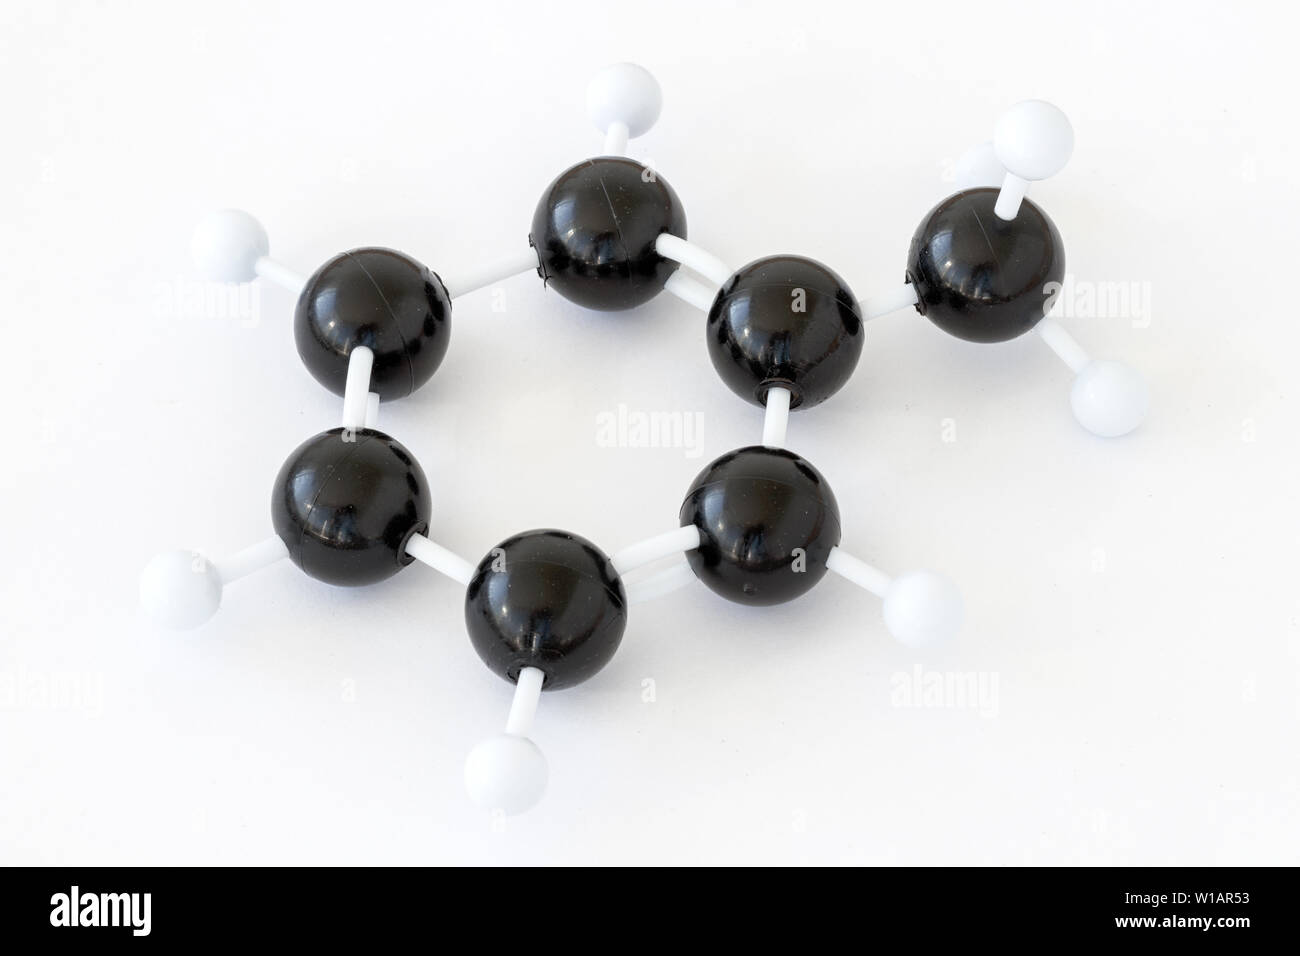 Plastikkugelmodell eines Toluol- oder Methylbenzol-Moleküls (C7H8), dargestellt mit kekule-Struktur auf weißem Hintergrund. Methylgruppe rechts. Stockfoto